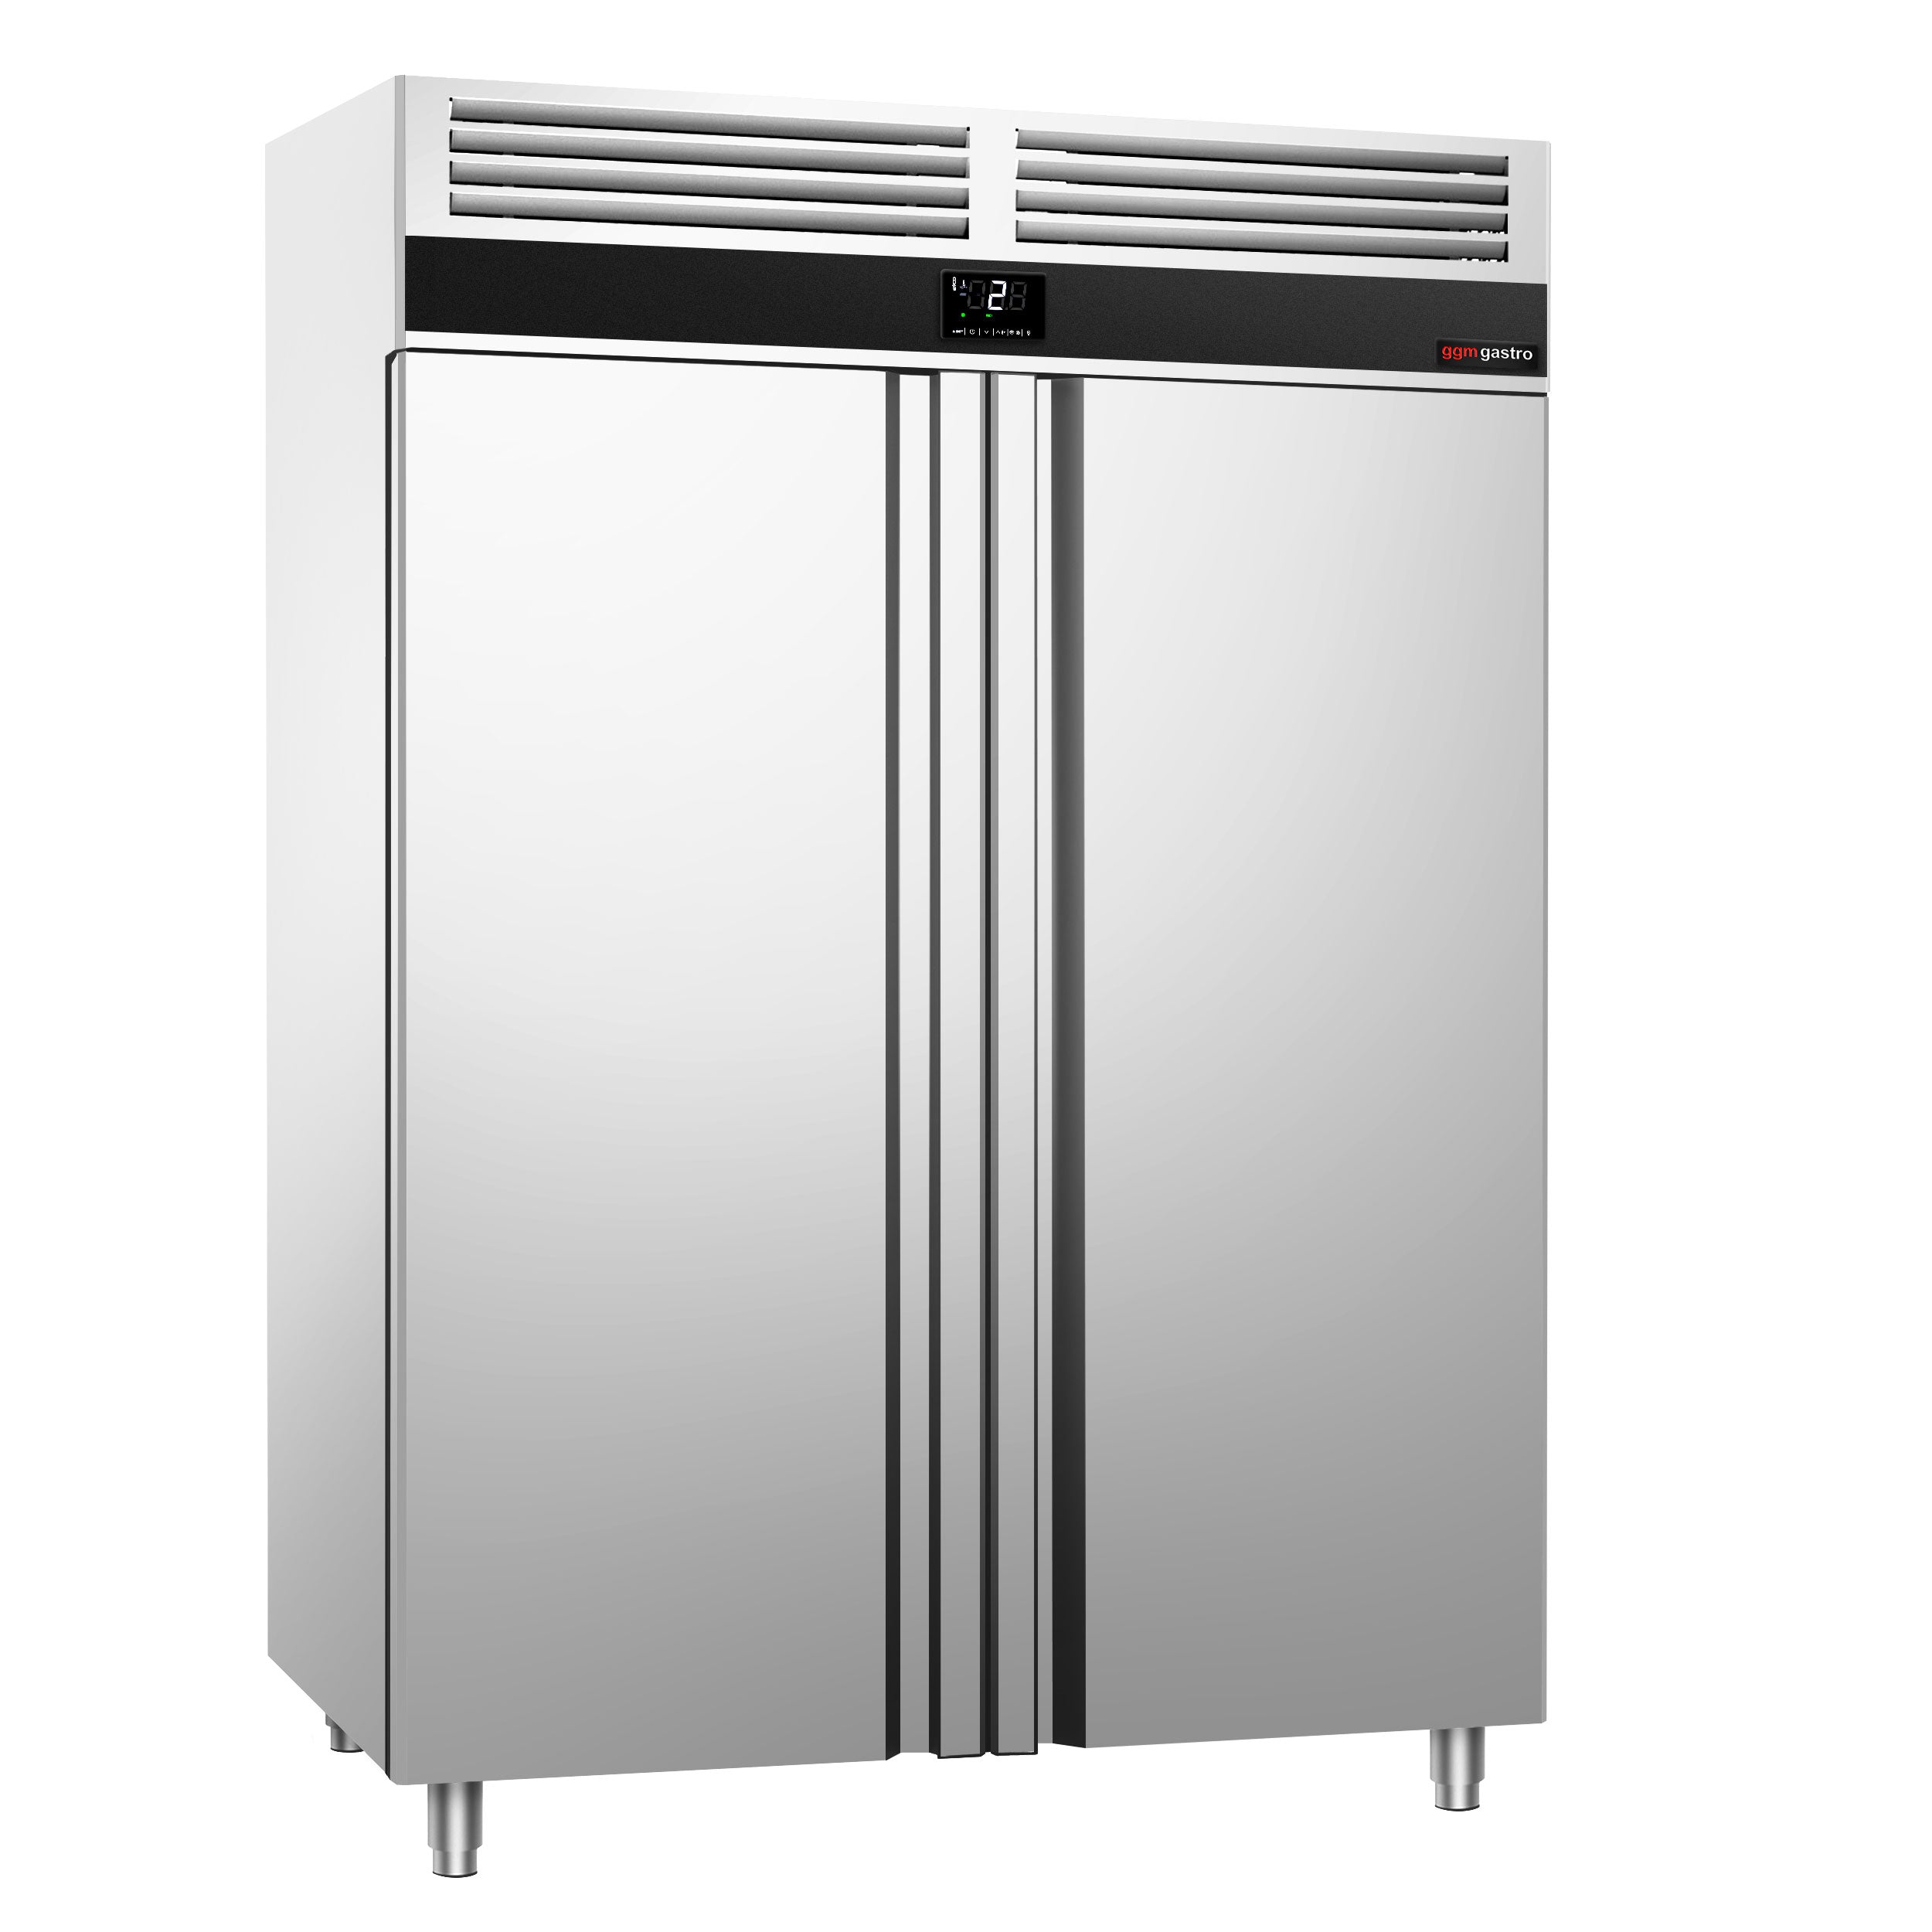 Хладилник - 1,4 х 0,81 м - 1400 литра - с 2 врати